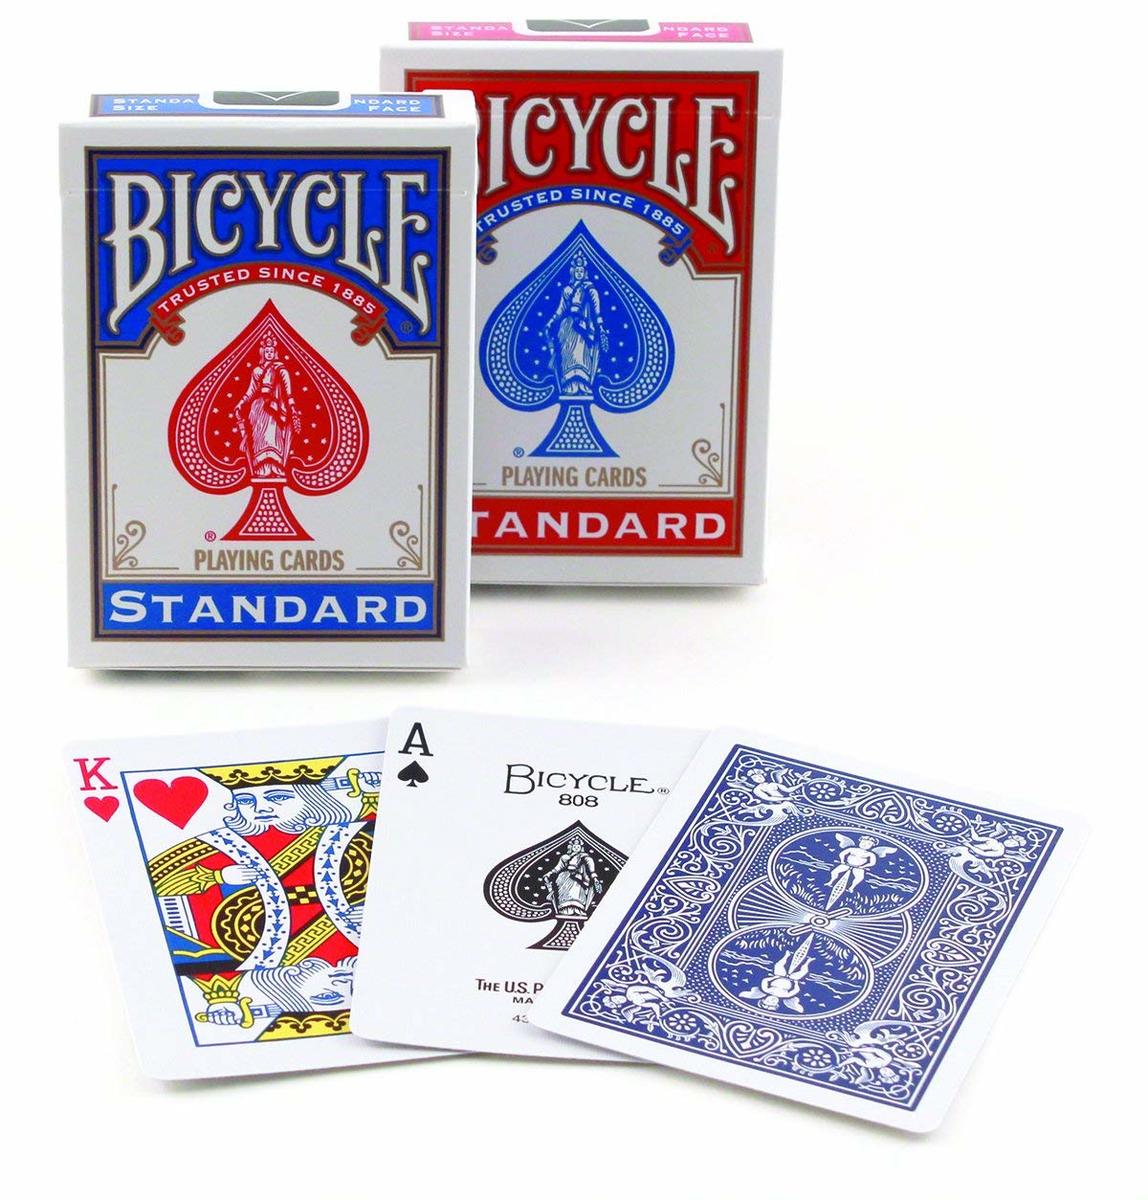 マジシャンも愛用しているトランプ   トランプ BICYCLE バイスクル マジック ポーカーサイズ １ダース 赤青 各6個 12個セット バイシクル 手品 マジシャン御用達 カード 